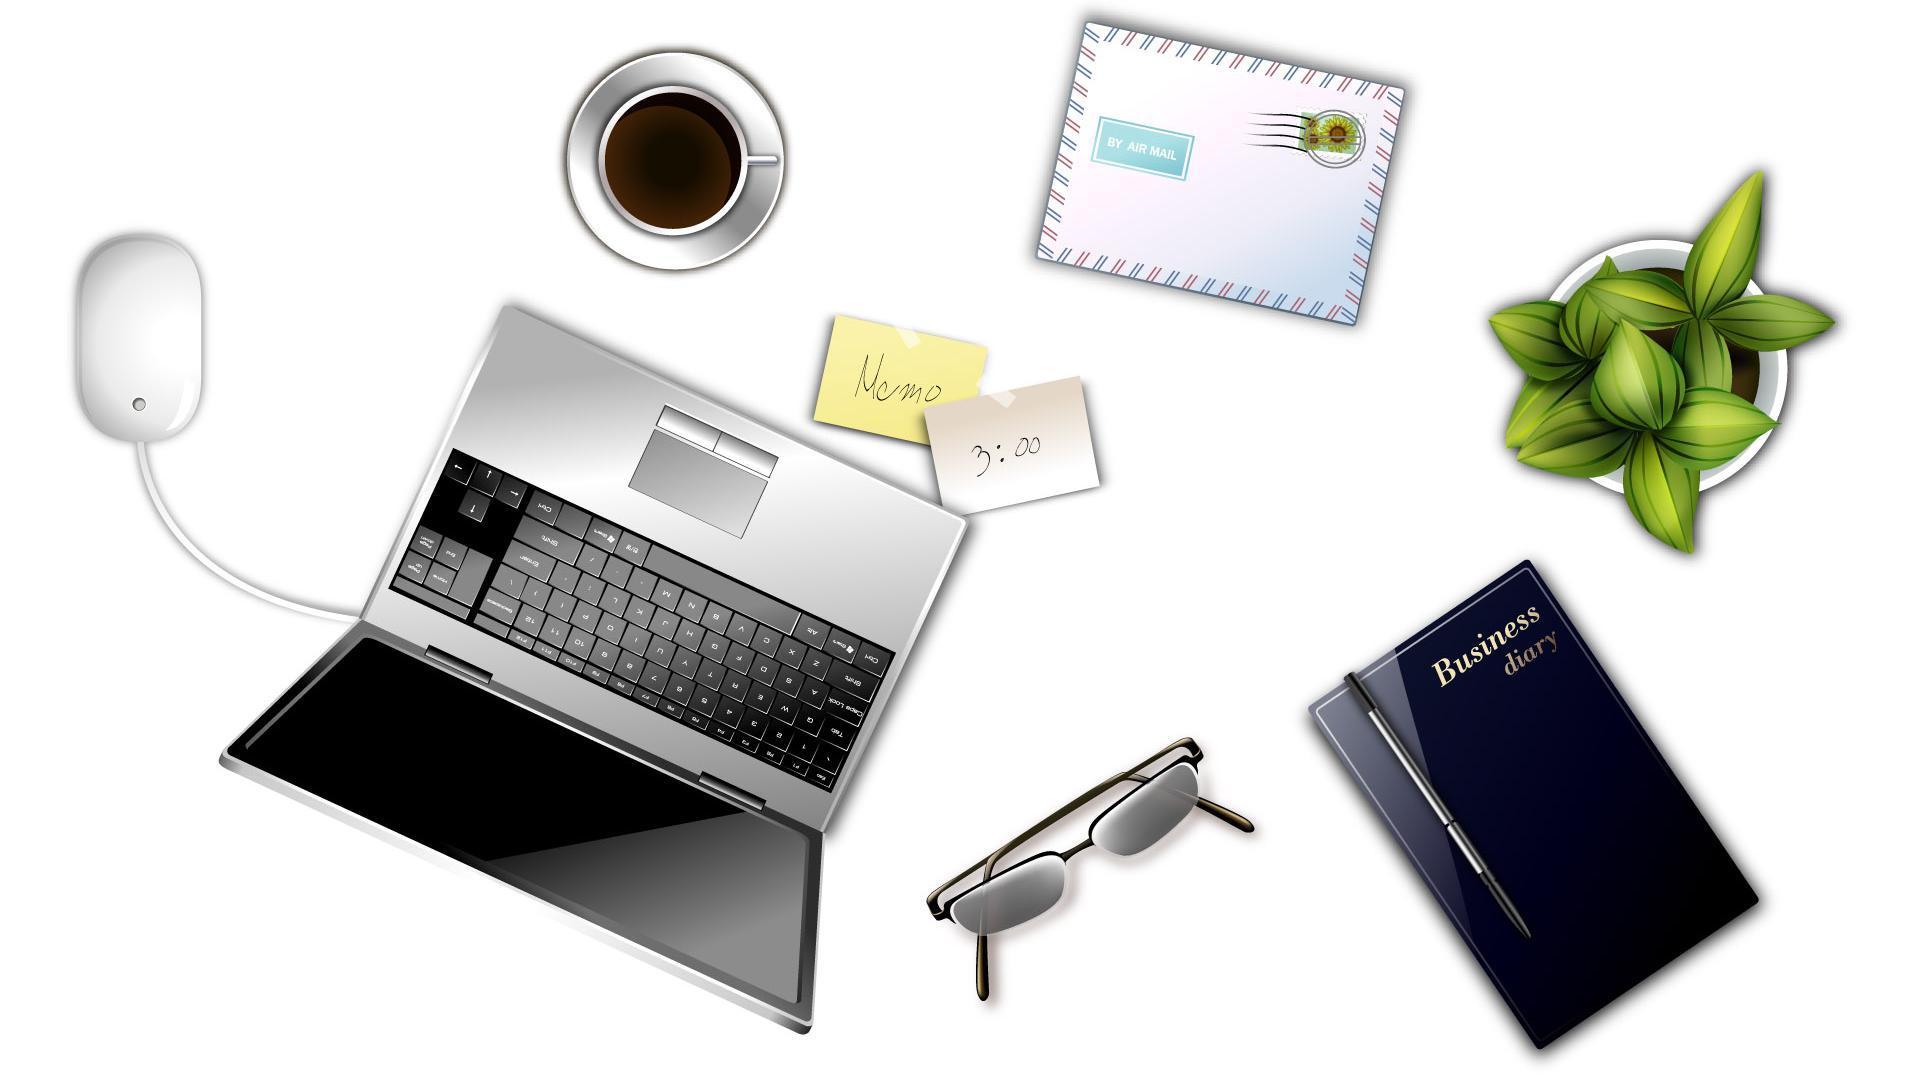 Digital Office Supplies Desktop Design Widescreen and HD